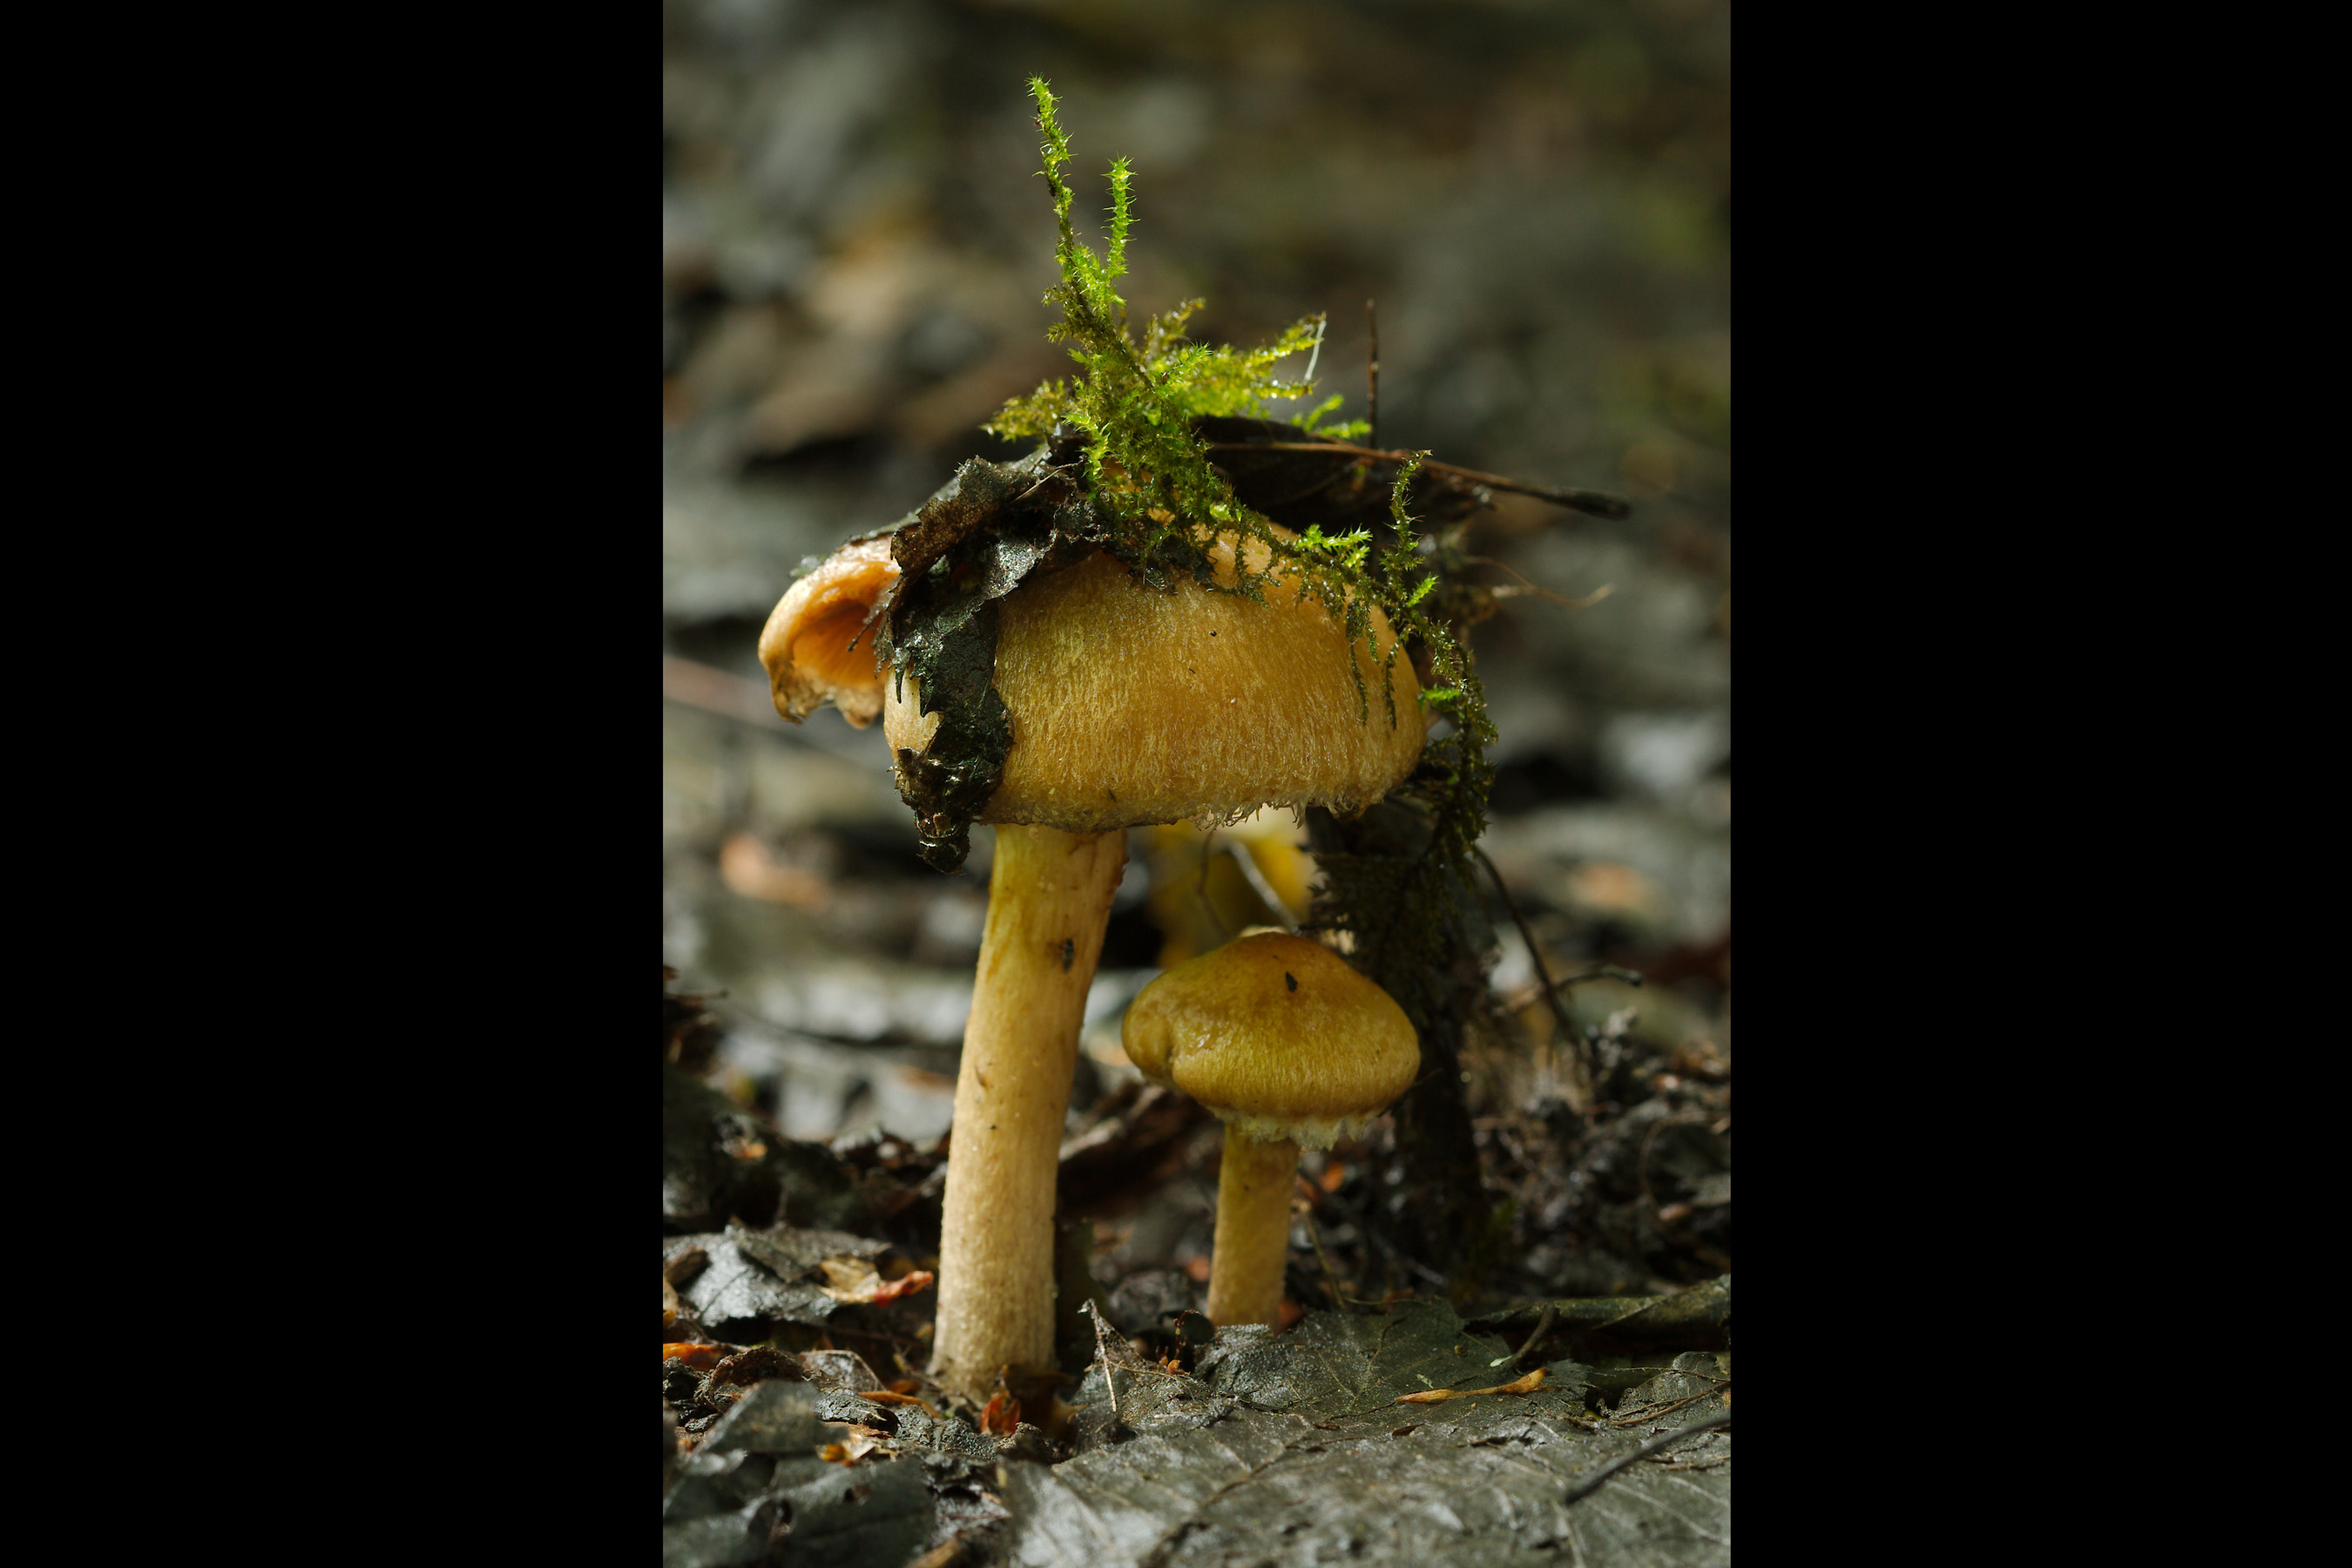 Na regen komen graspaddenstoelen